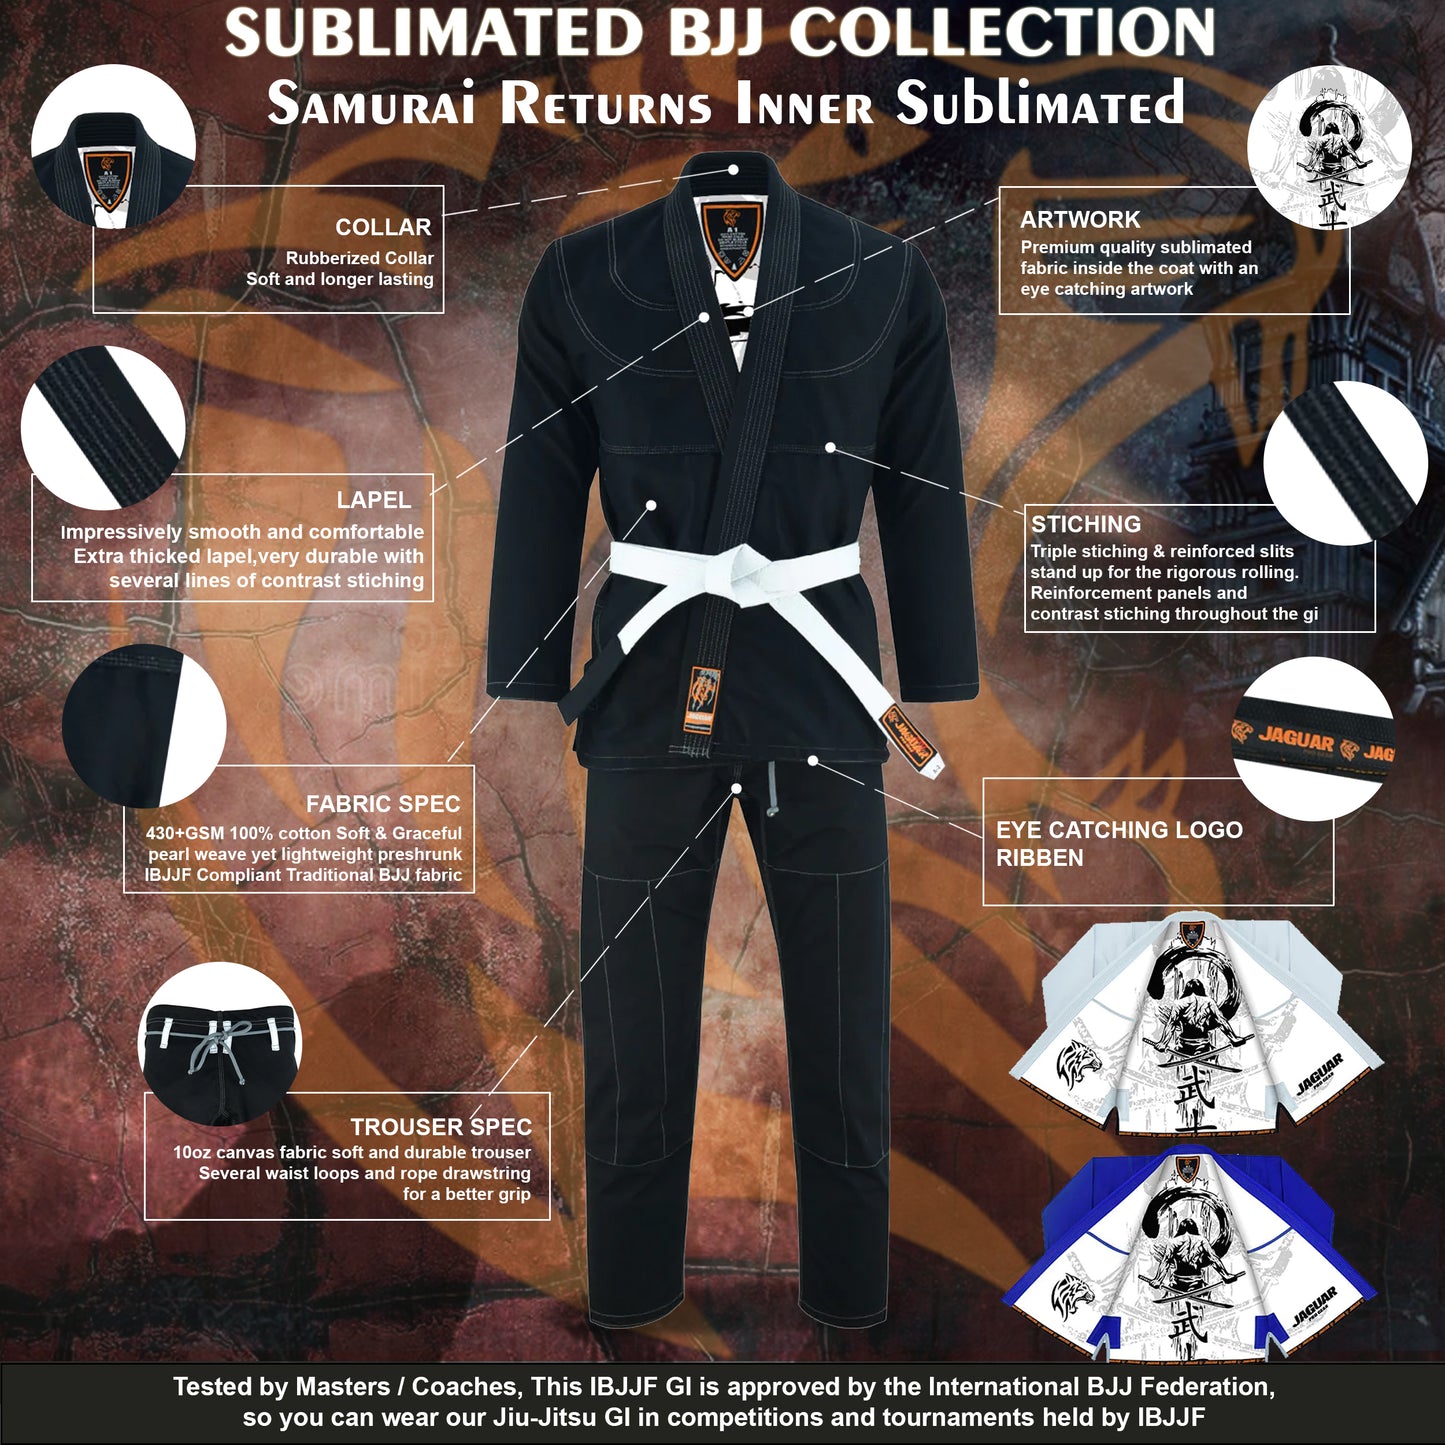 Jaguar Pro Gear – Samurai Returns Inner Sublimated - Pro Brazilian Jiu Jitsu BJJ Kimono Gi Uniform Unisex